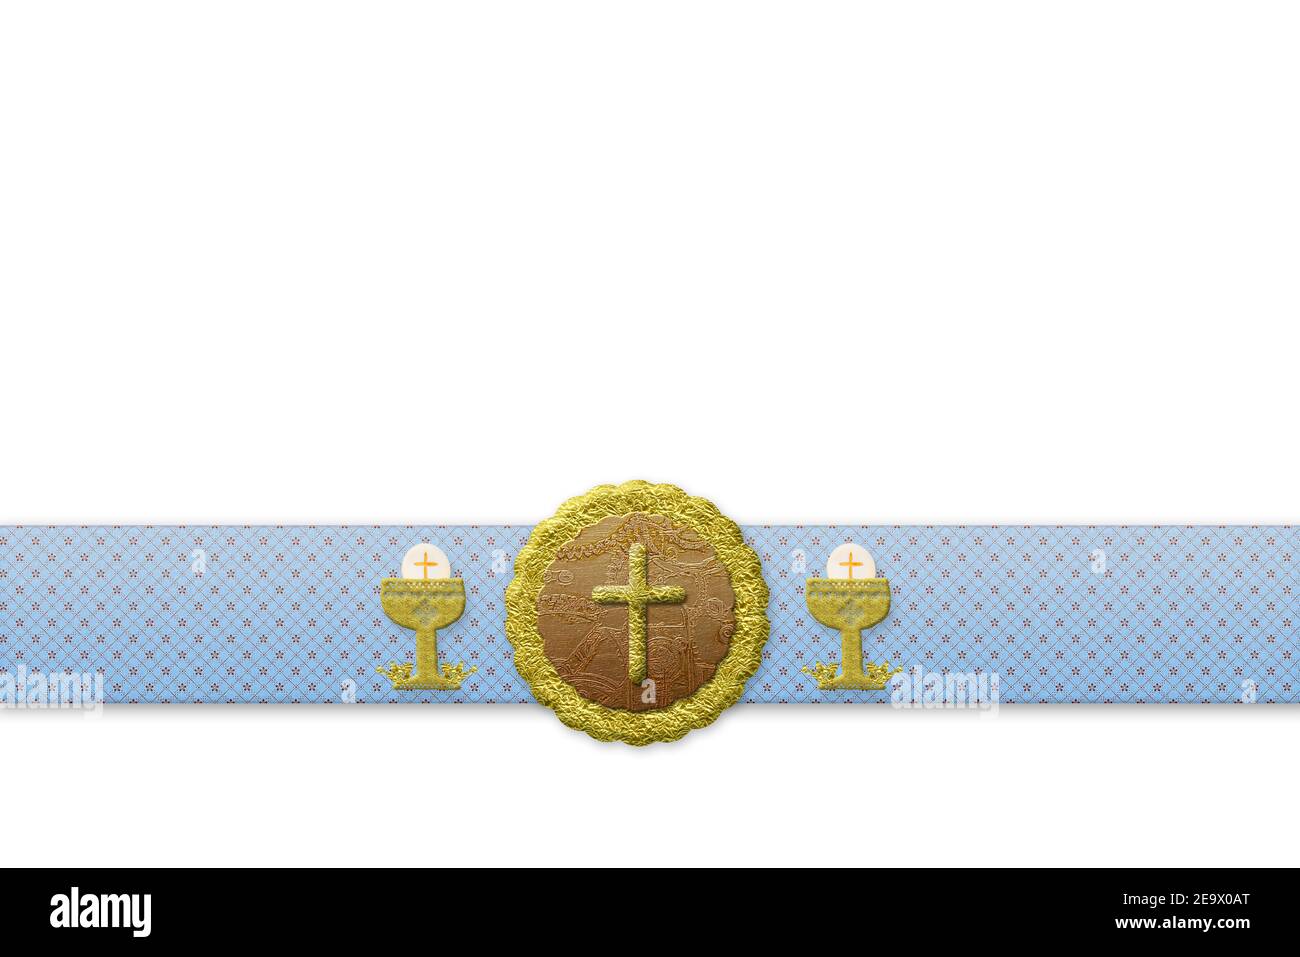 Première communion invitations cartes arrière-plans. Crucifix et calice dorés scintillants sur un morceau de tissu isolé sur fond blanc Banque D'Images